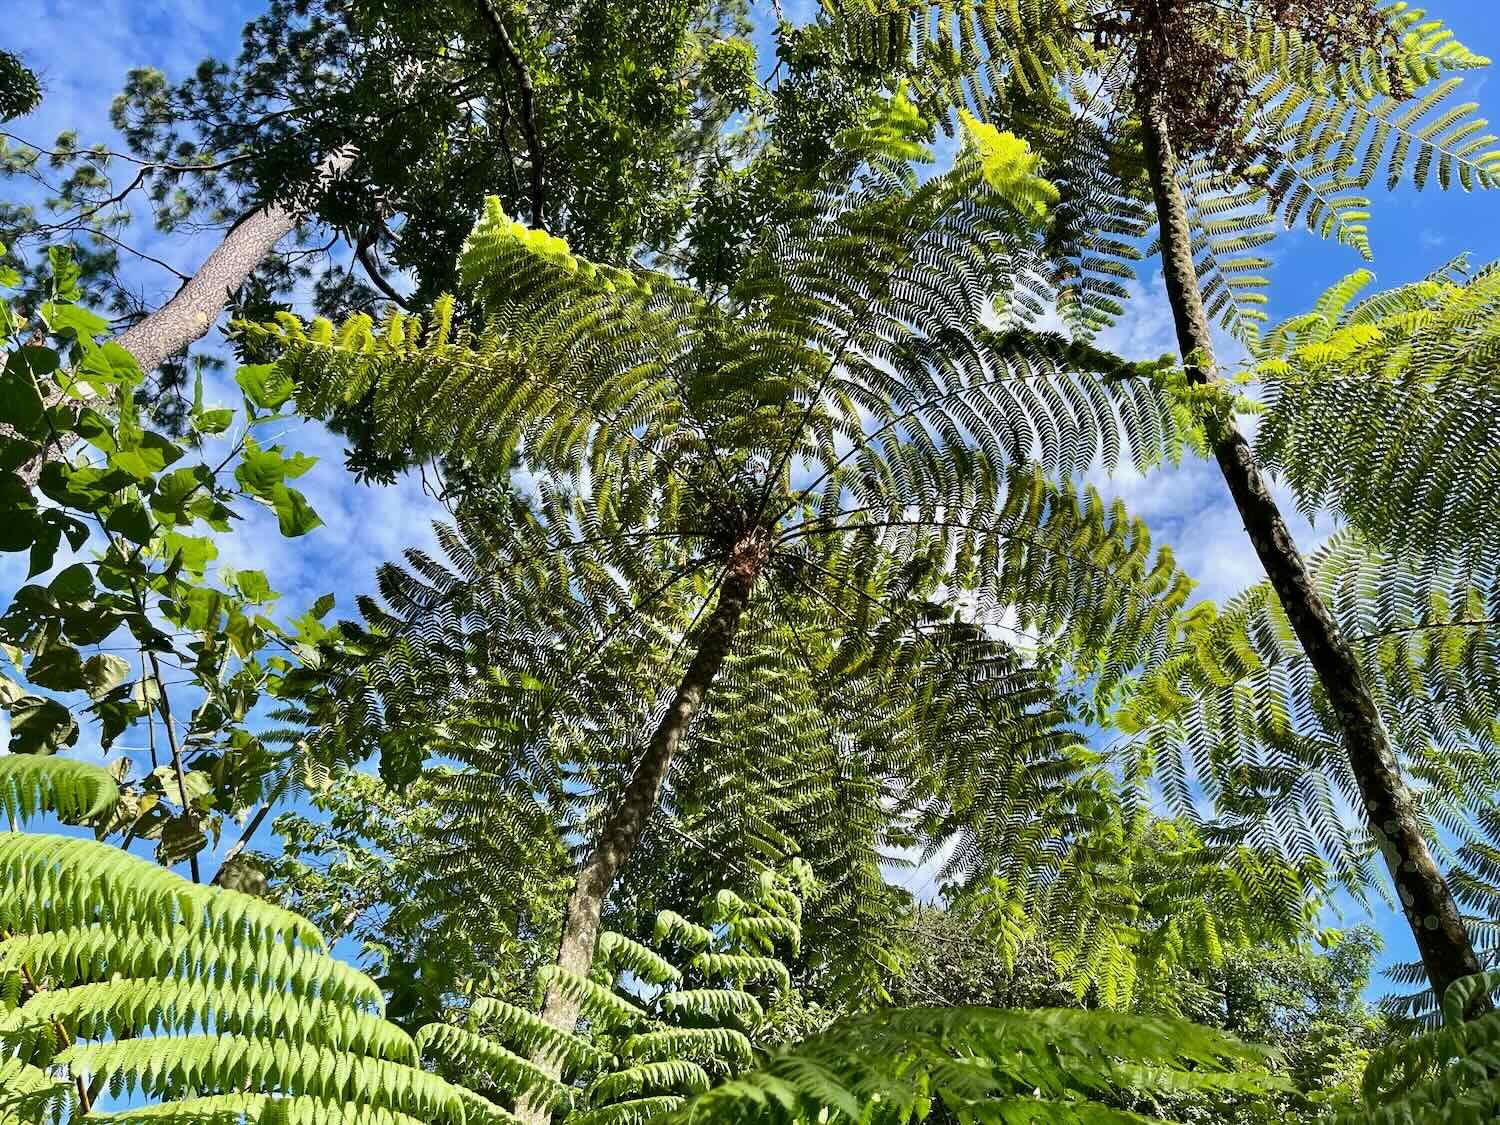 Tree ferns towered overhead